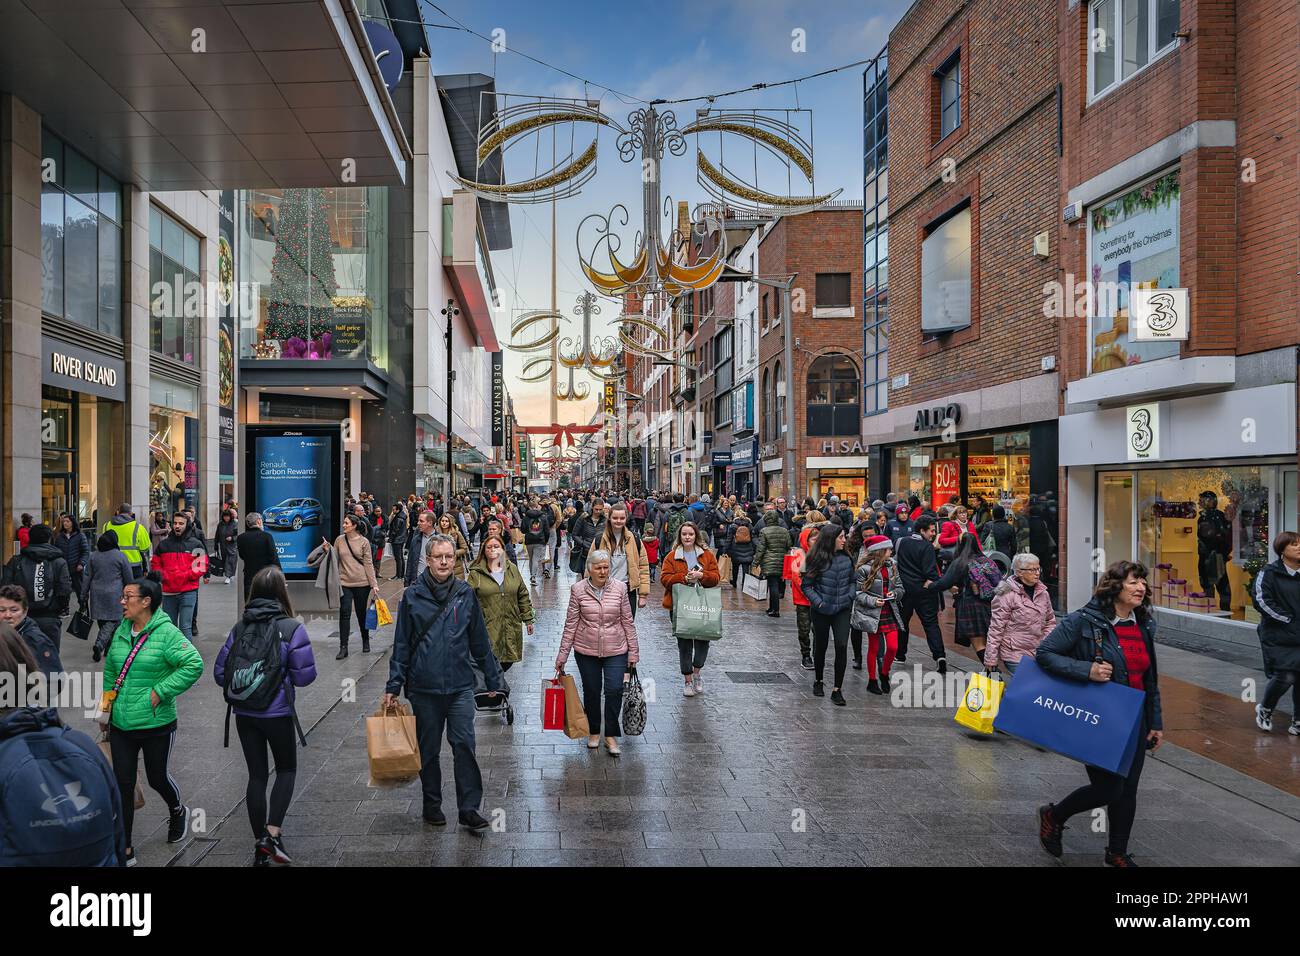 Henry Street décoré pour Noël avec des foules de gens sur la frénésie de shopping. Irlande Banque D'Images